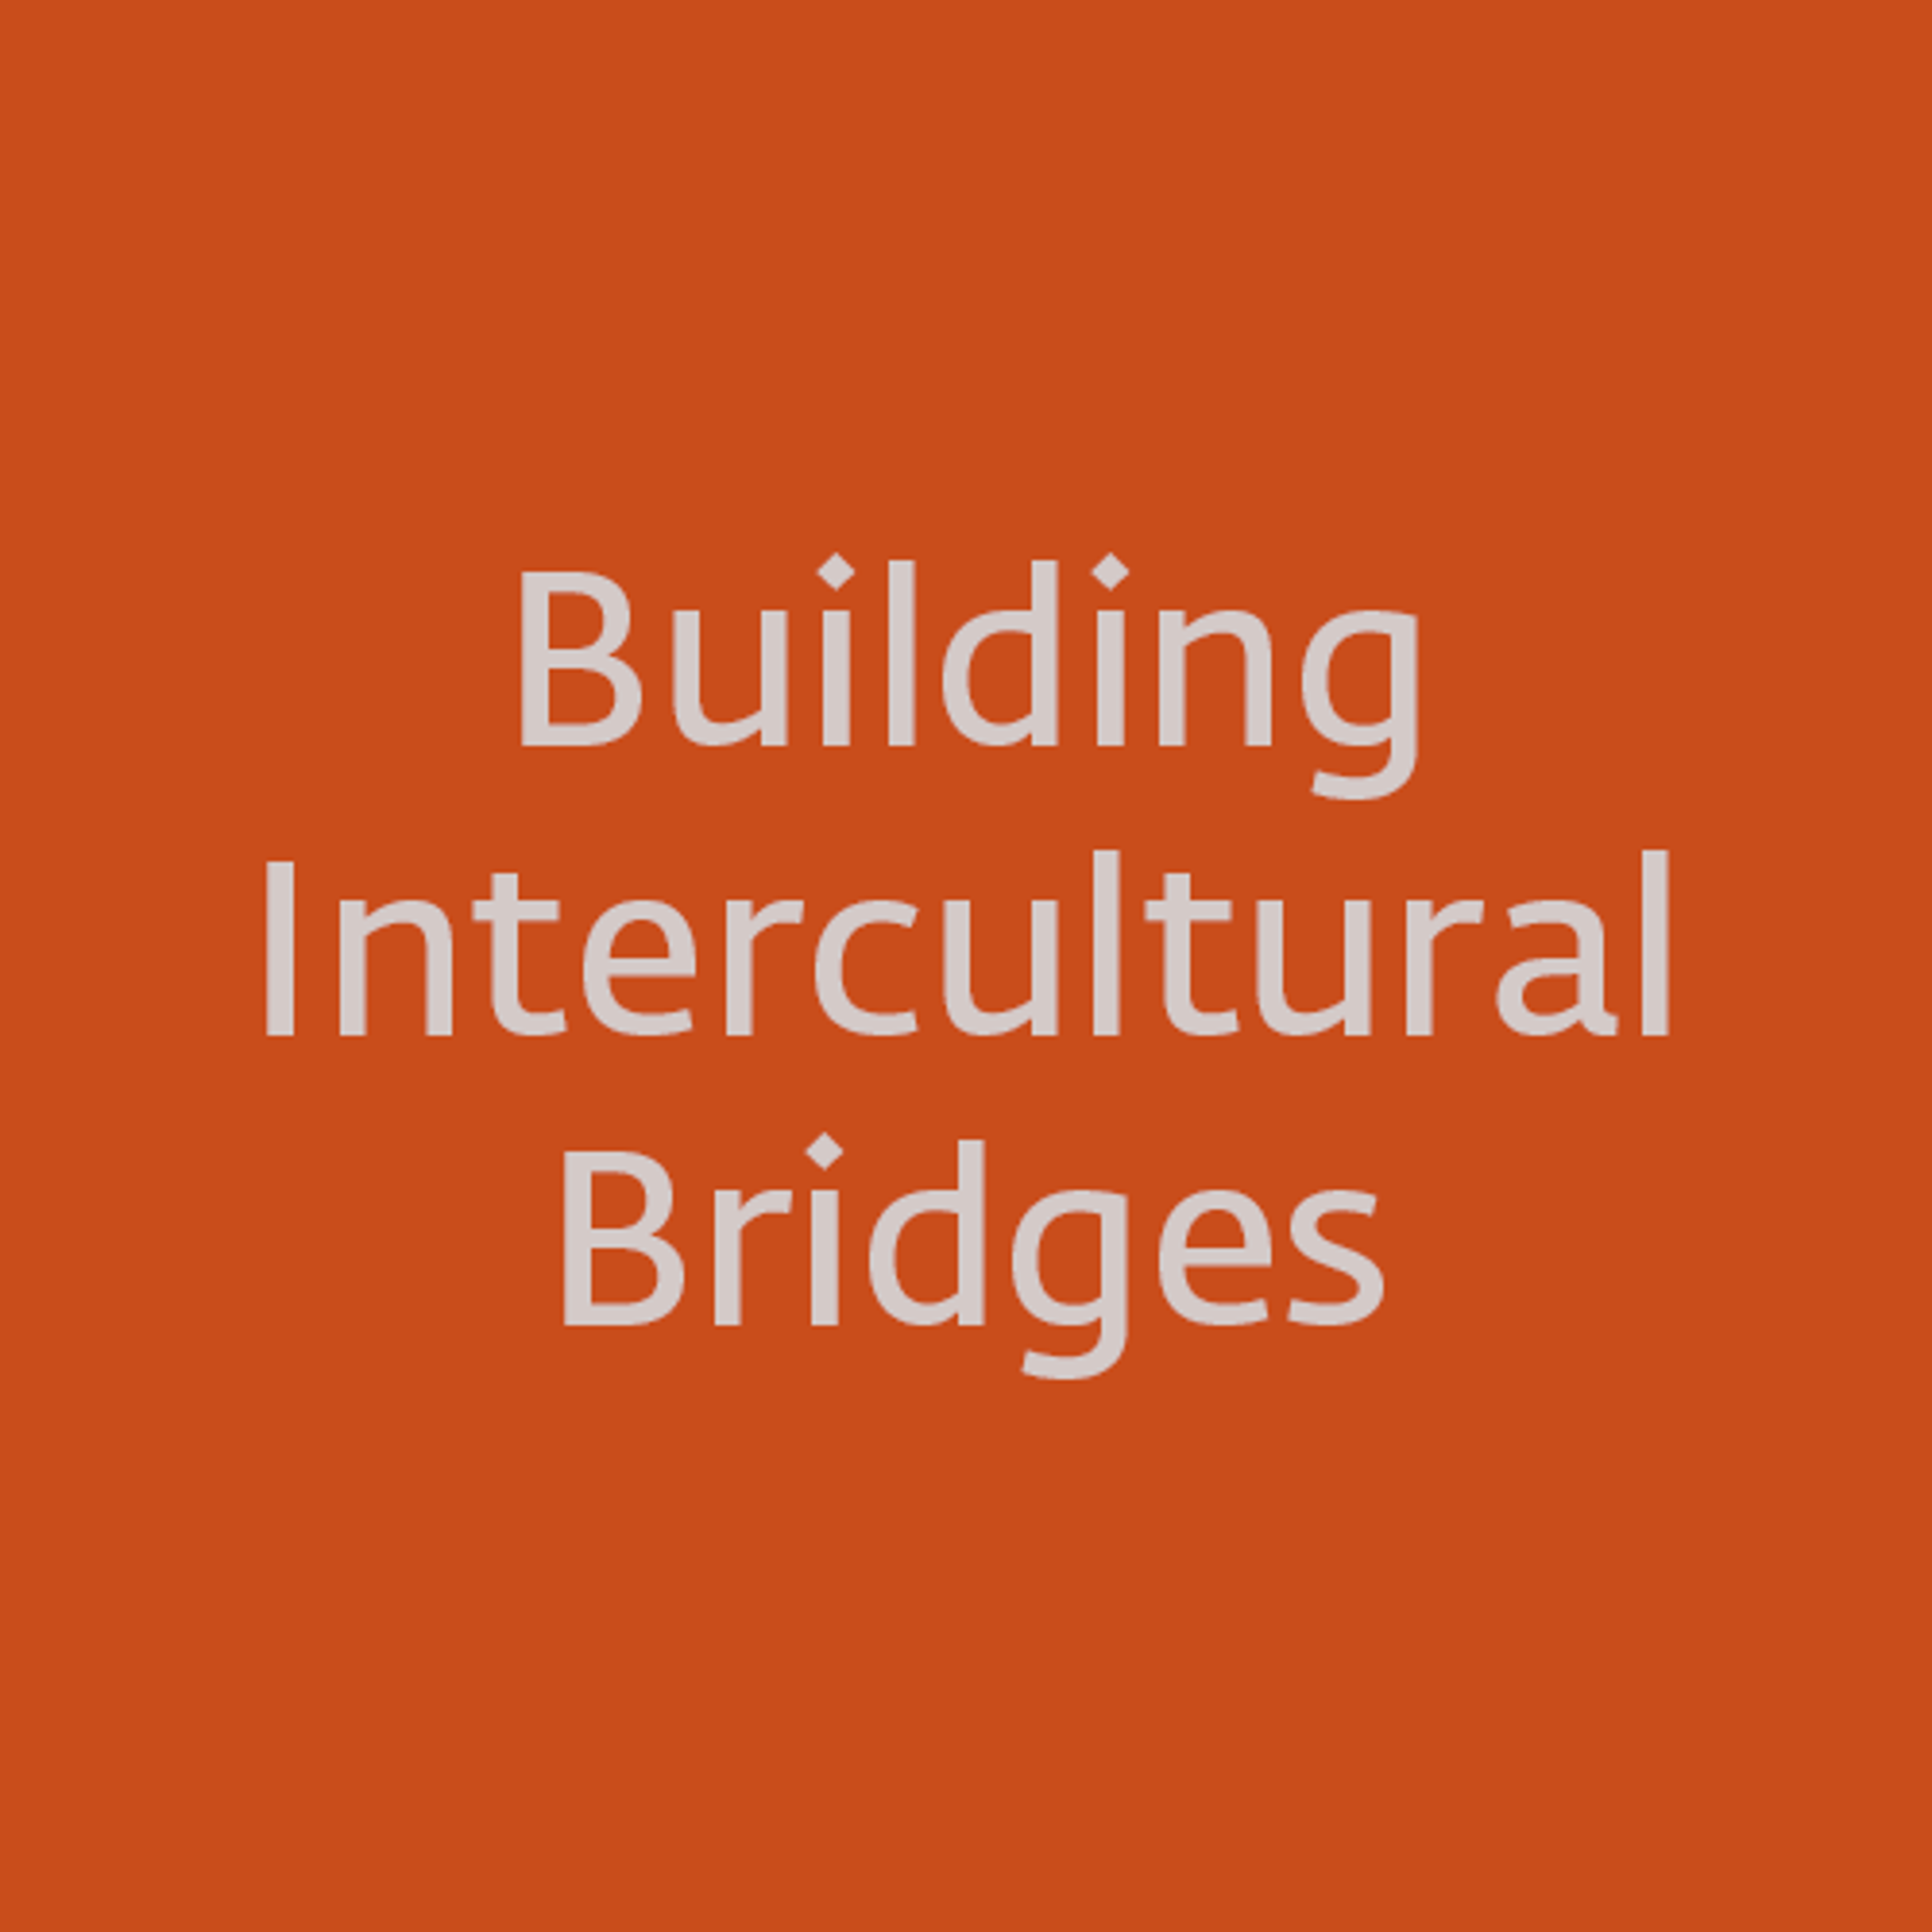 Building Intercultural Bridges loading=